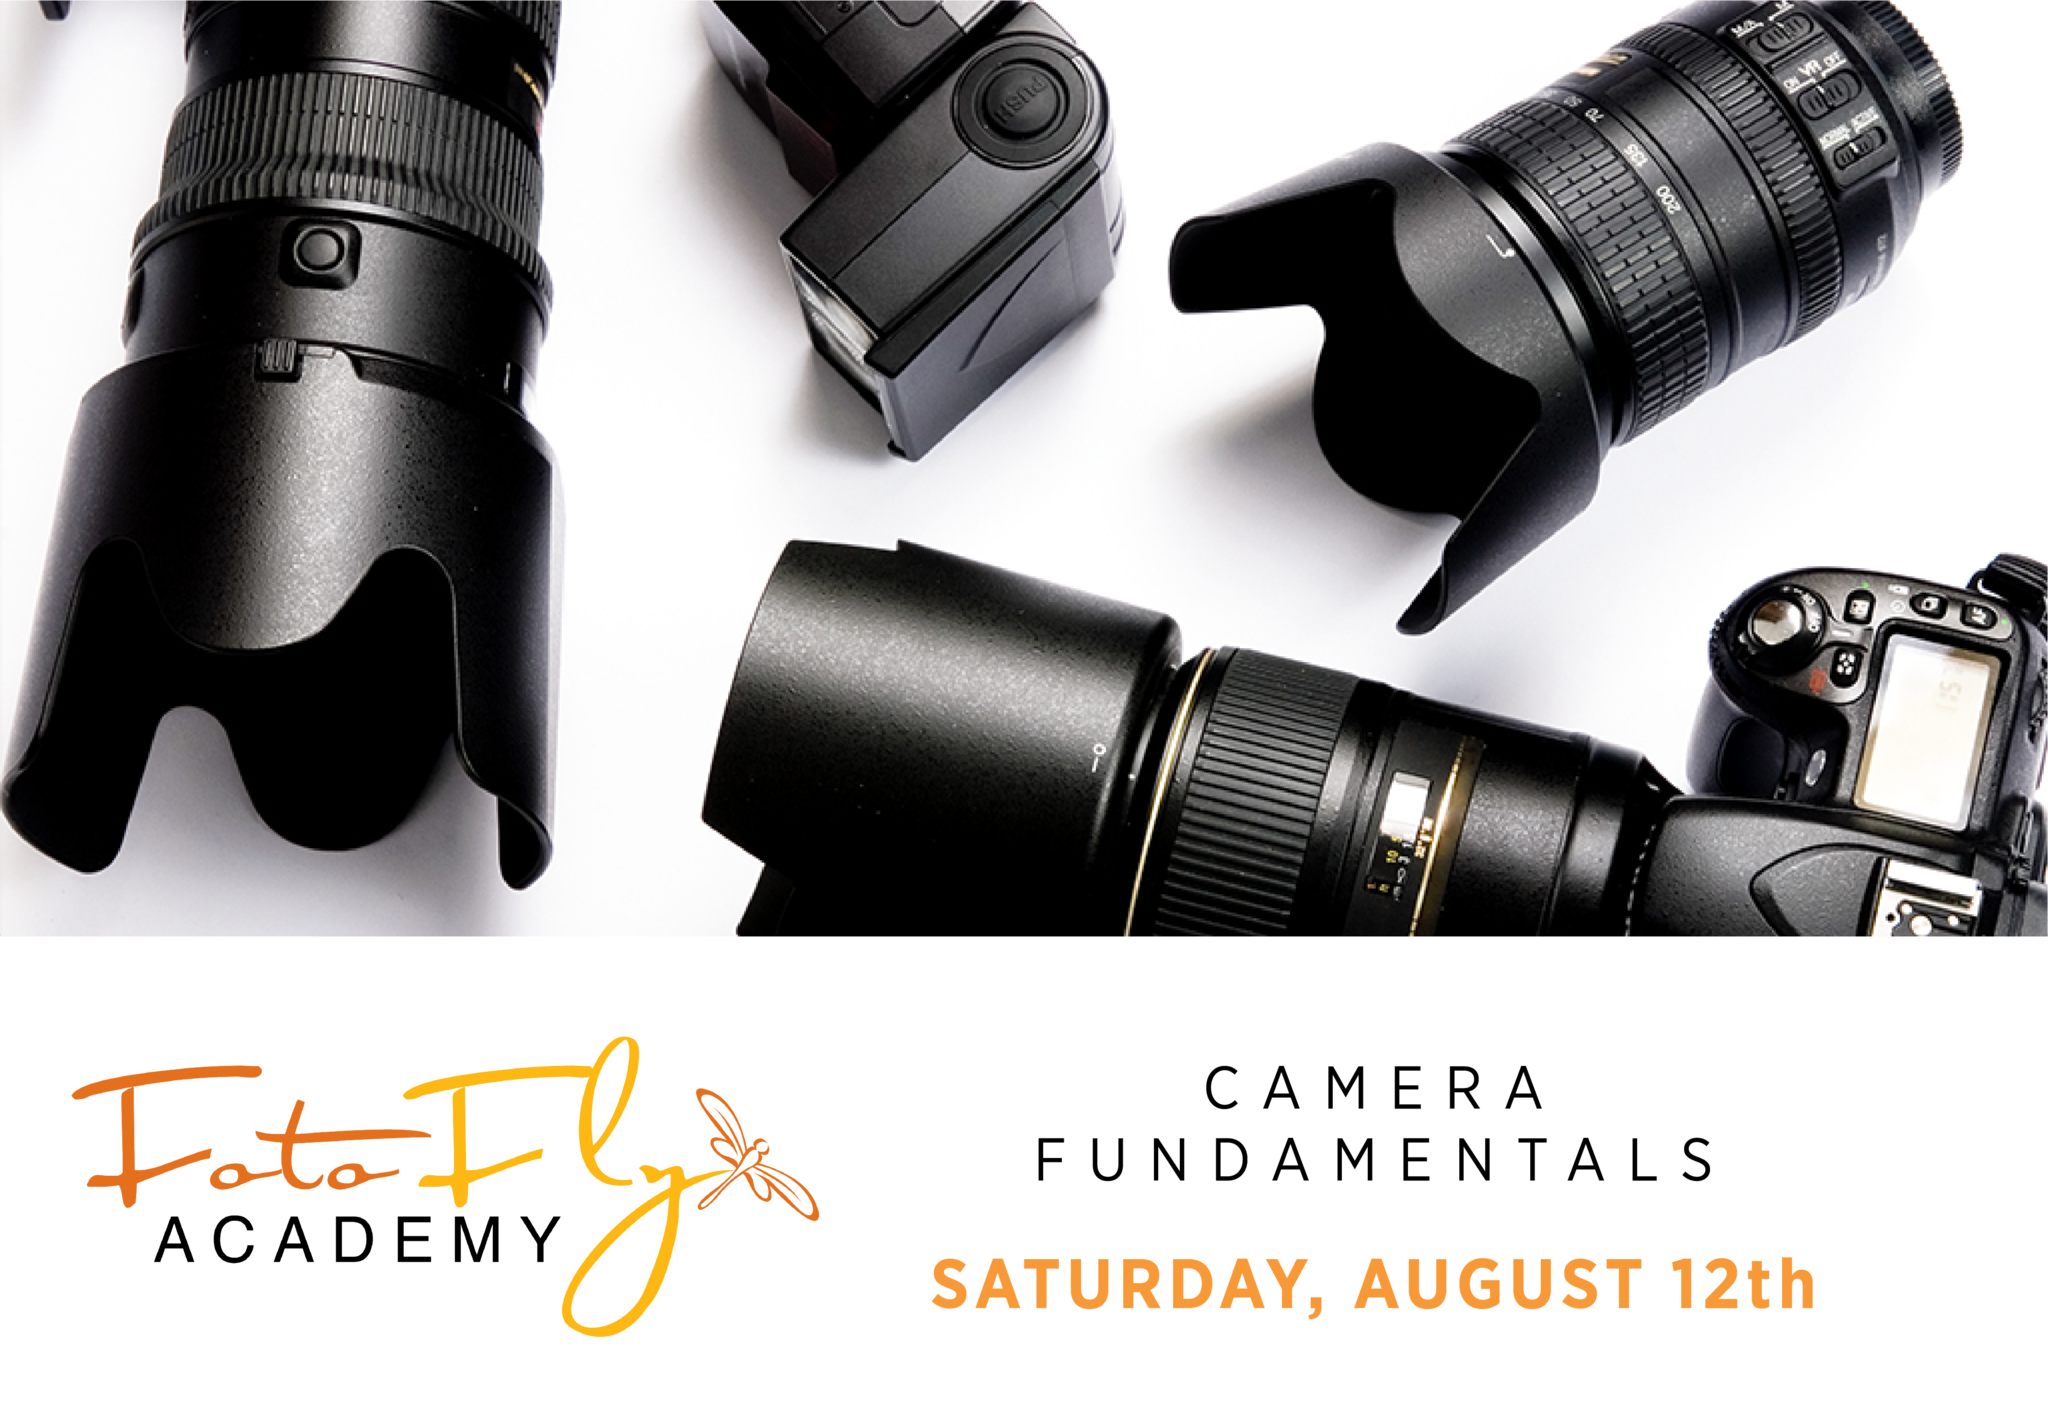 Fotofly Academy Camera Fundamentals (August 12th)